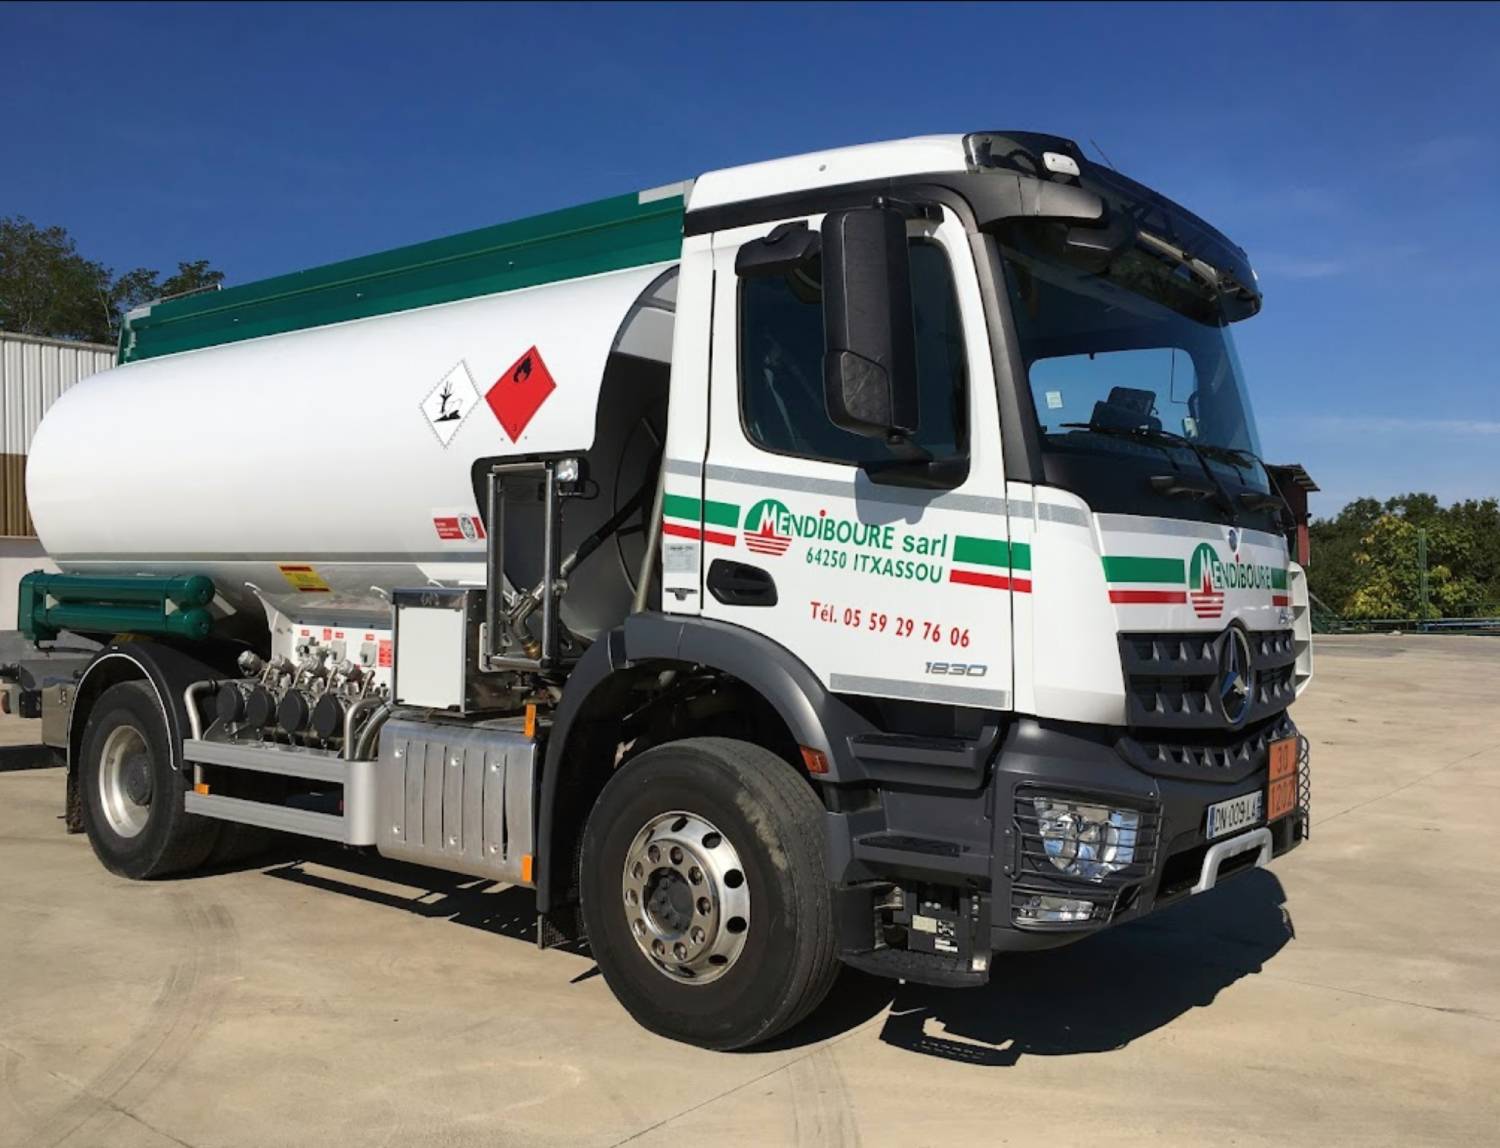 Les camions de Mendiboure pour le transport pétrolier